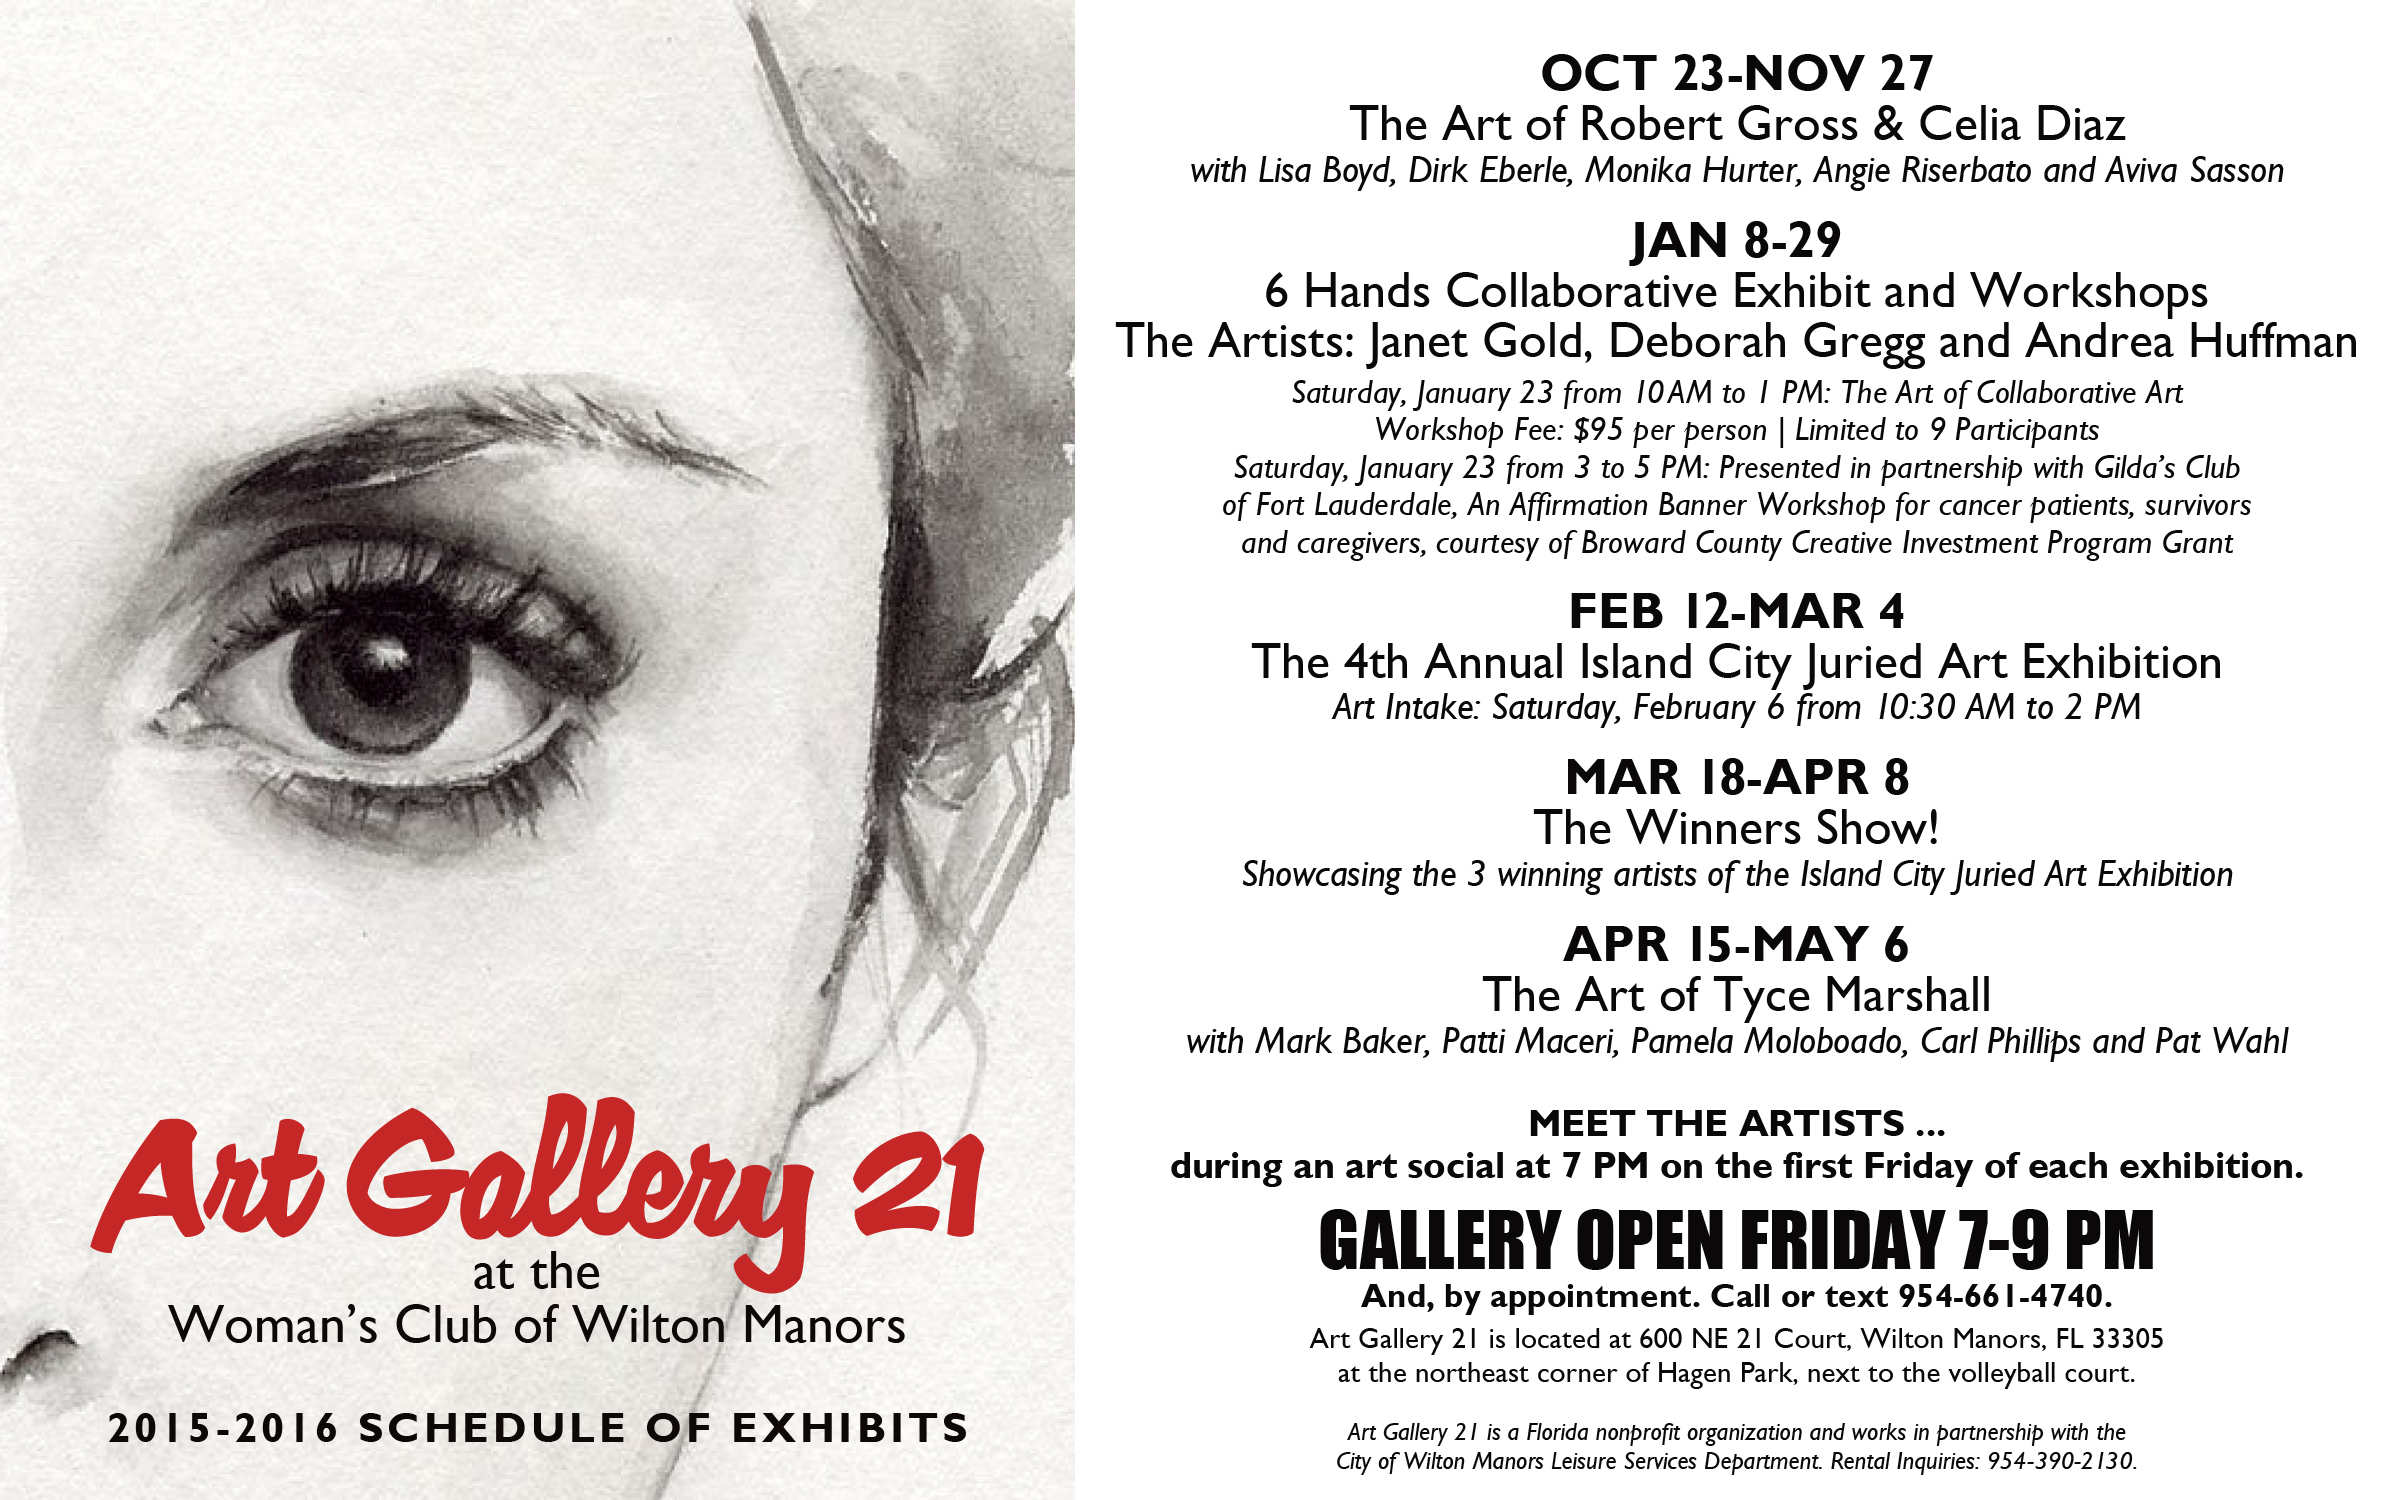 2015-2016 Art Gallery 21 Schedule